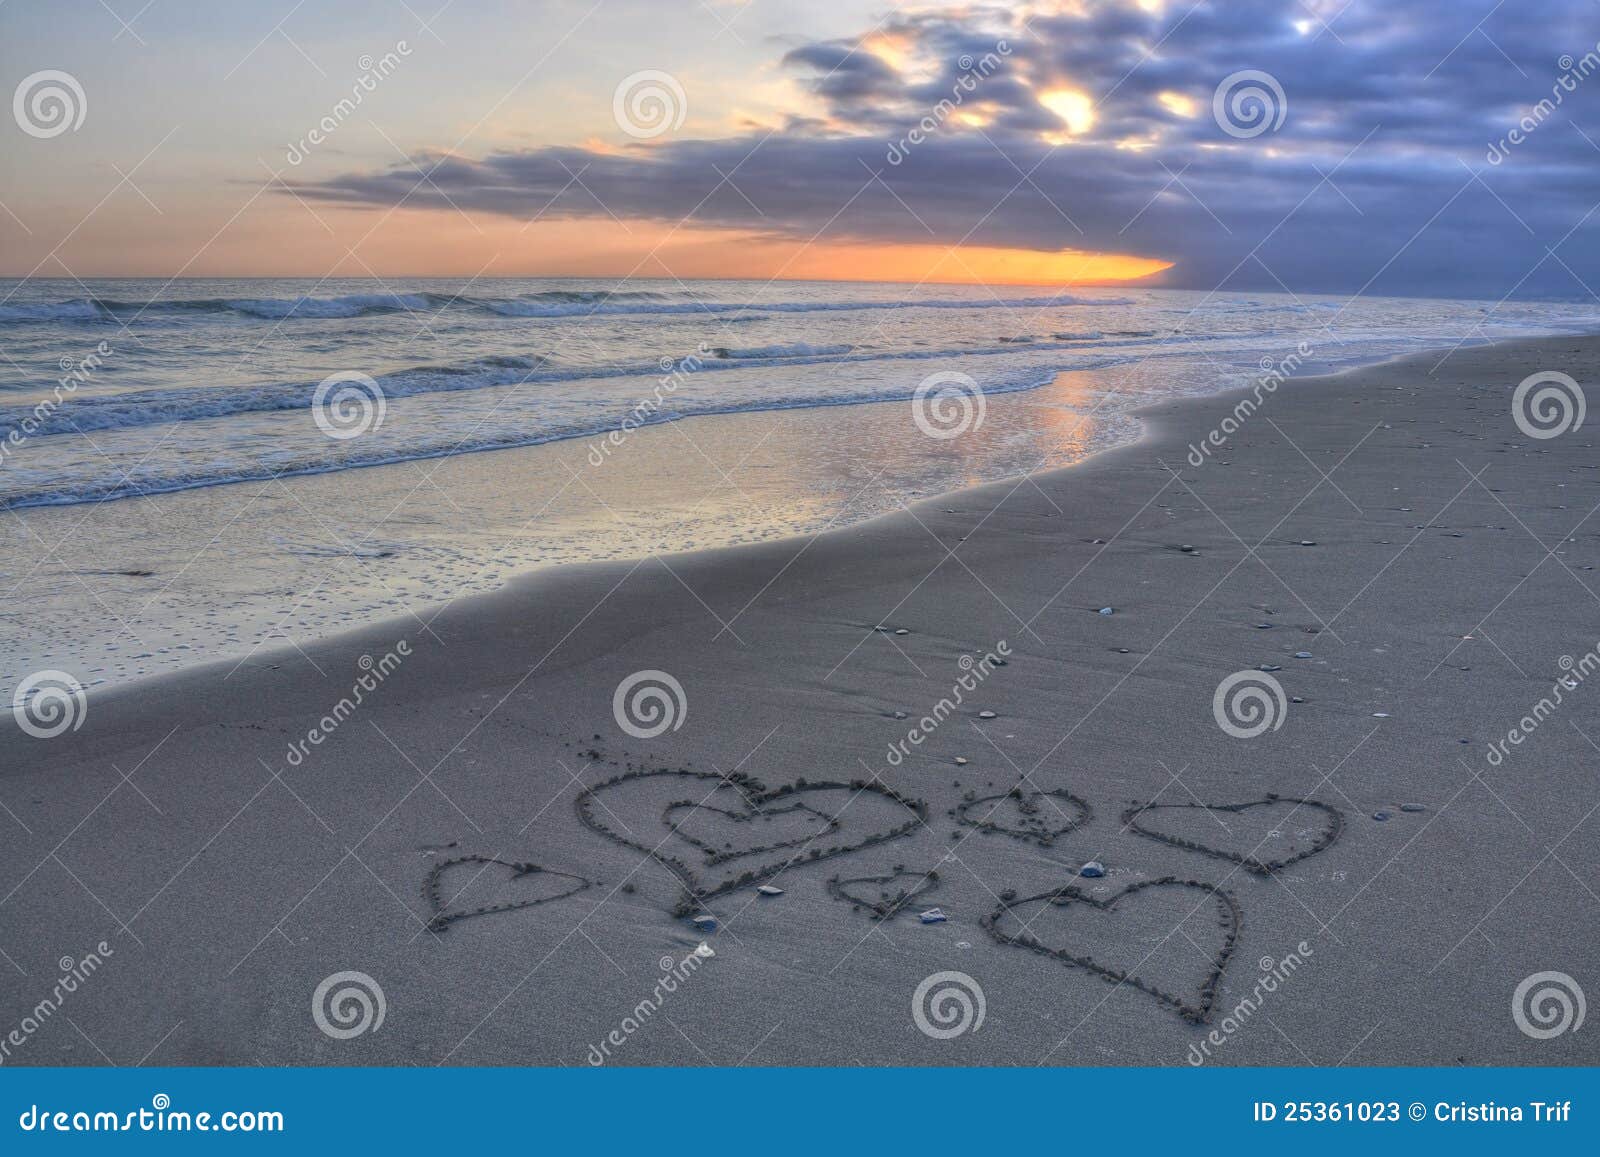 hearts on costa del sol beach